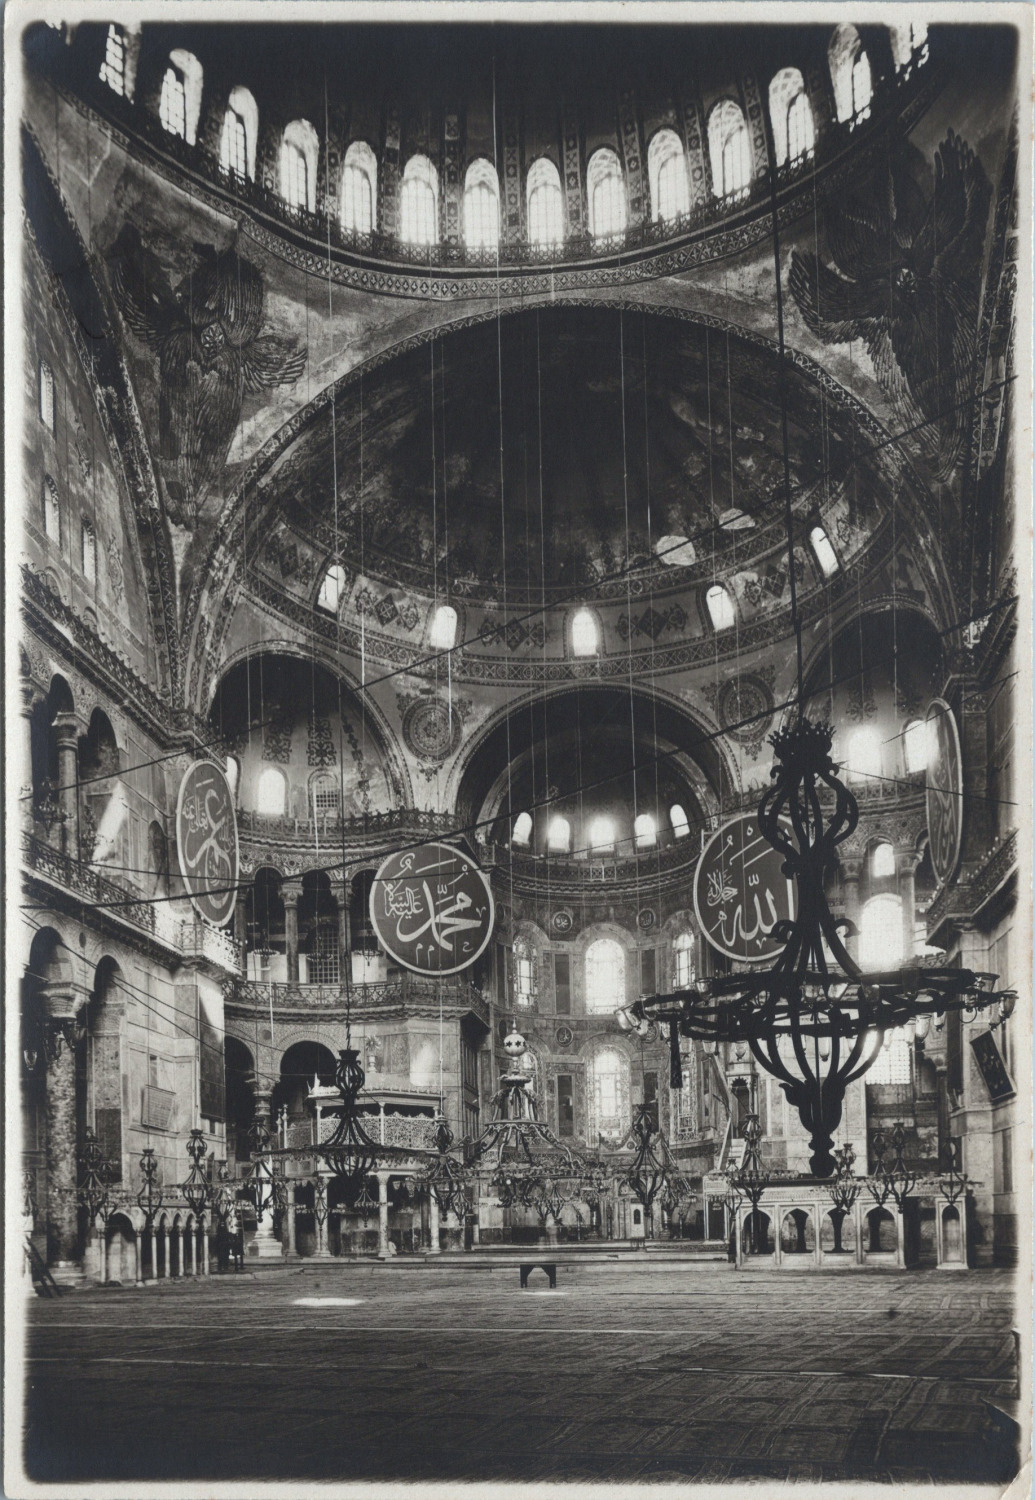 Constantinople, Hagia Sophia Interior, Vintage Print, 1919 Vintage Print